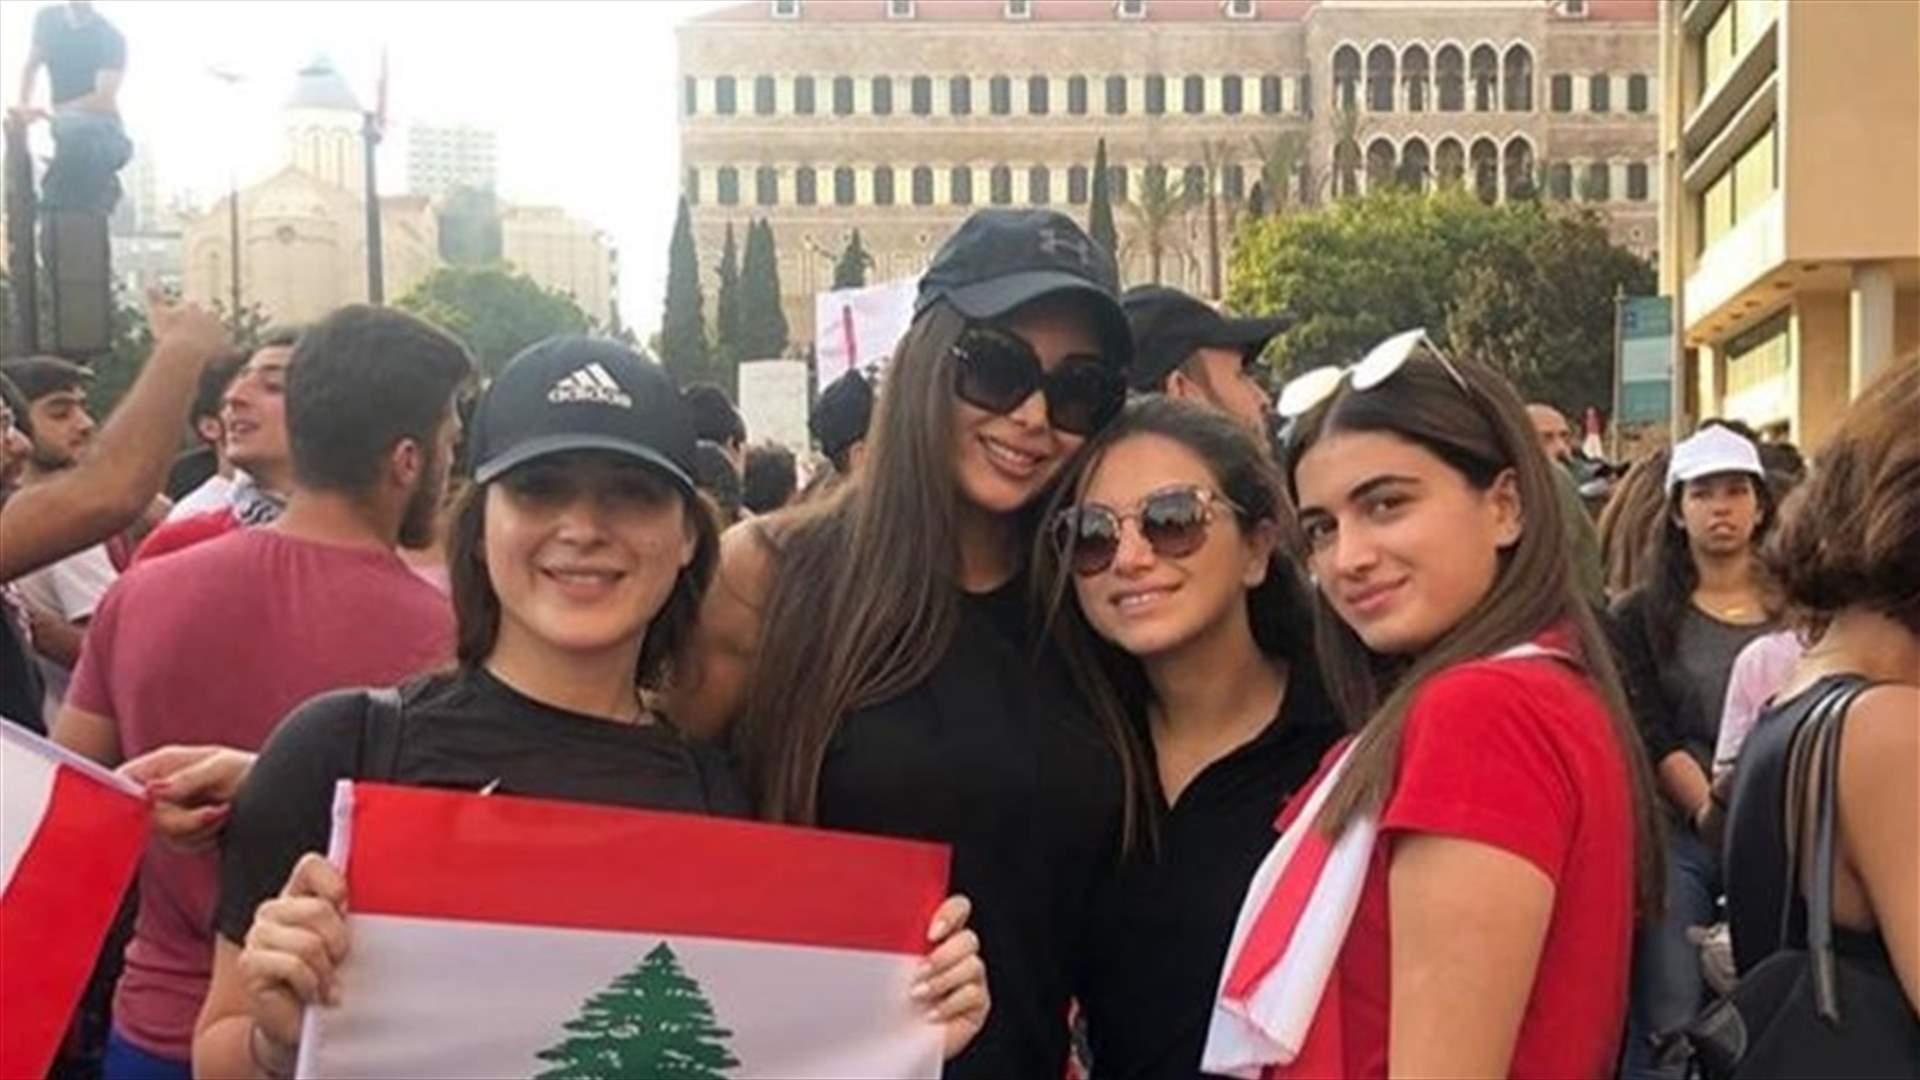 ملكة جمال لبنان بين المحتجين في رياض الصلح... كيف علّقت كارن غراوي؟